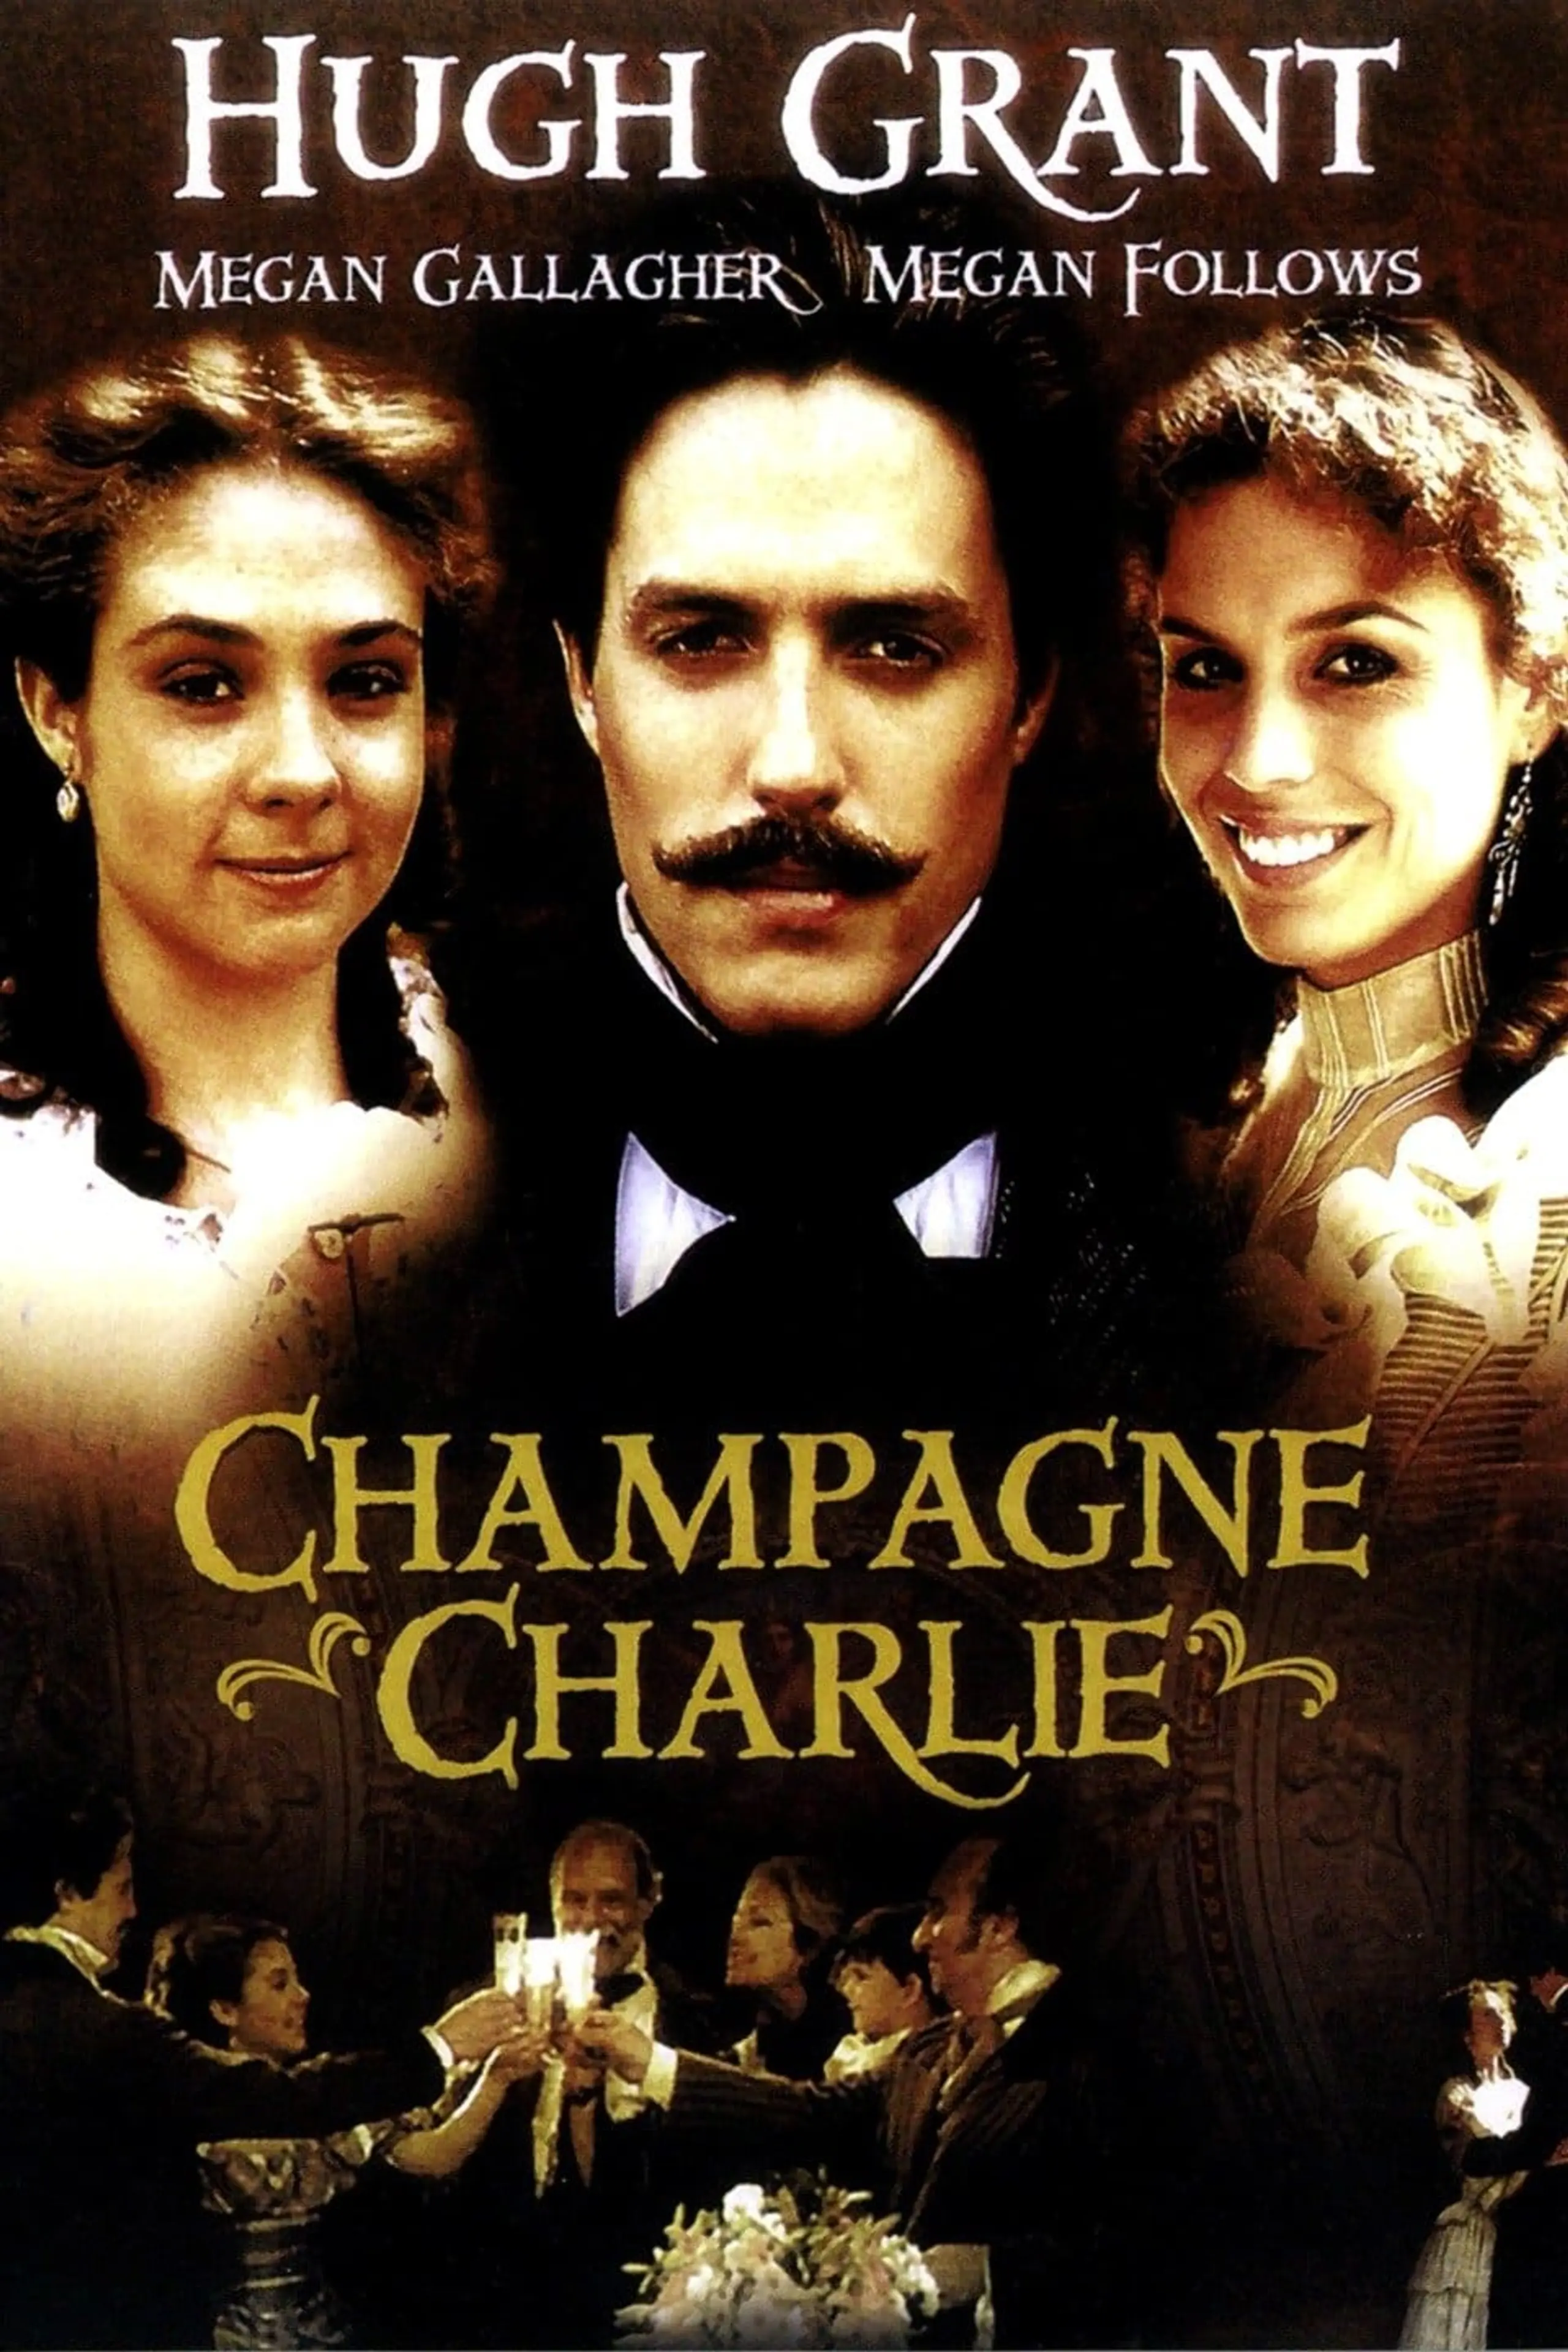 Charles Heidsieck - Ein Leben, berauschend wie Champagner